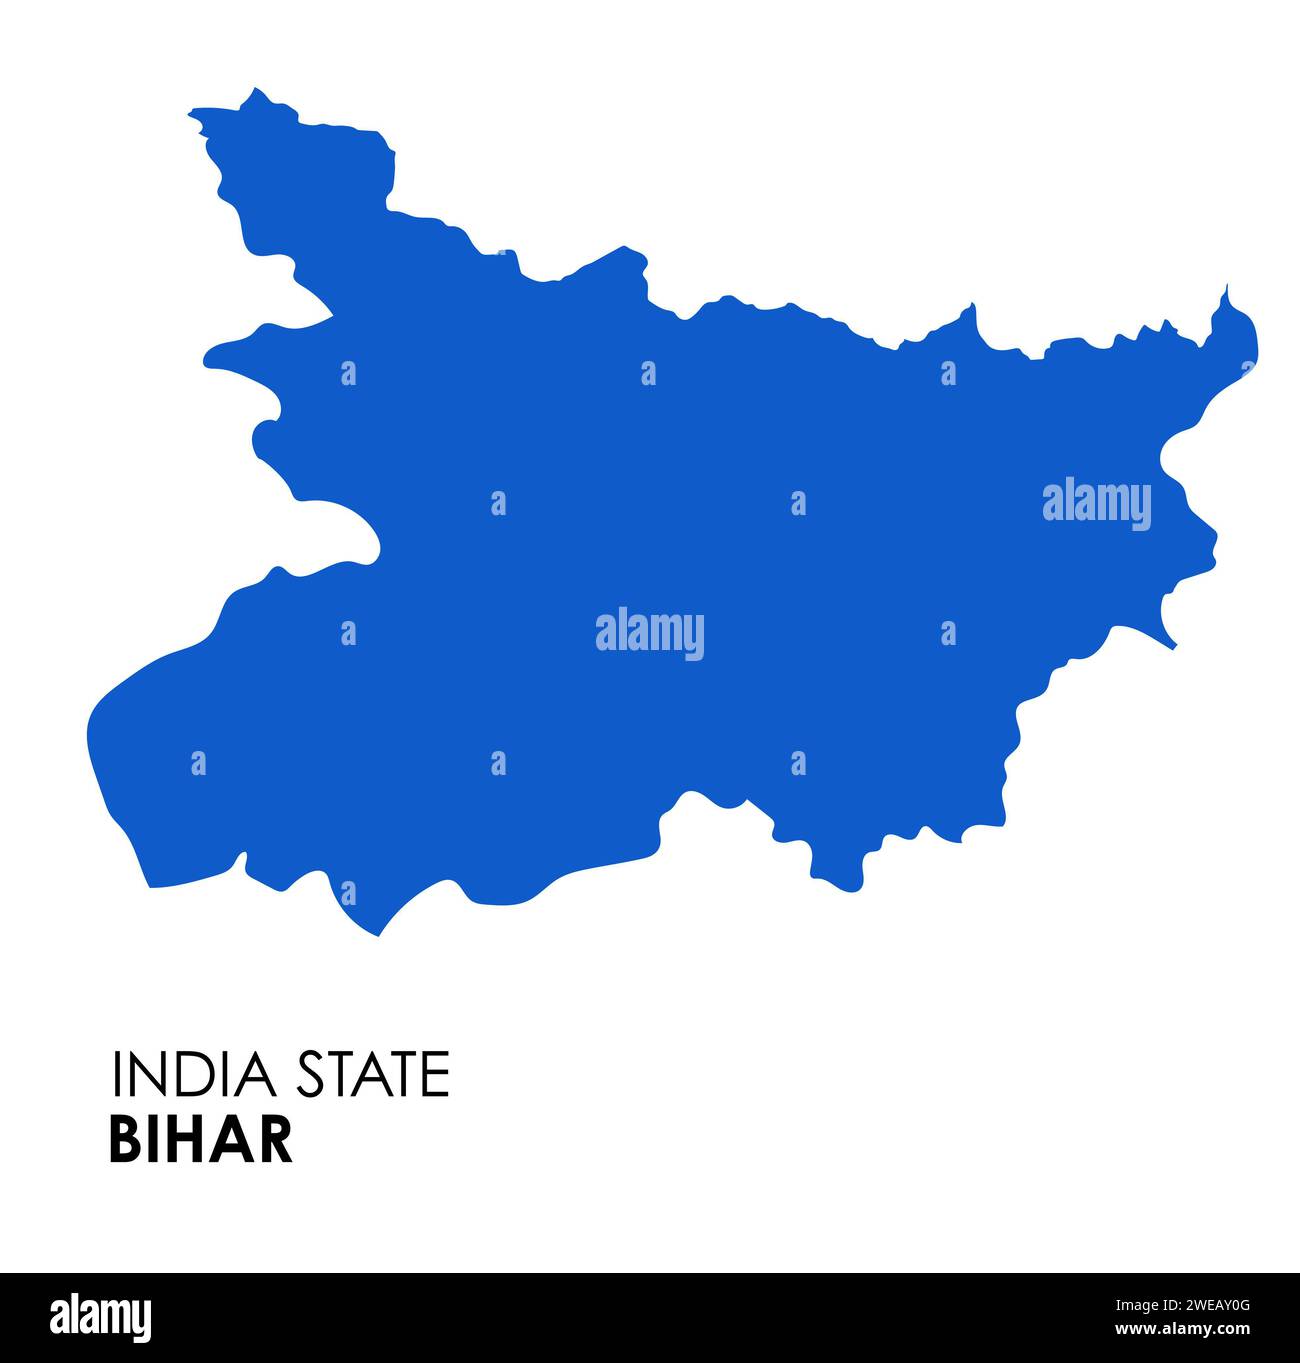 Carte Bihar de l'état indien. Illustration vectorielle de carte Bihar. Carte vectorielle Bihar sur fond blanc. Banque D'Images